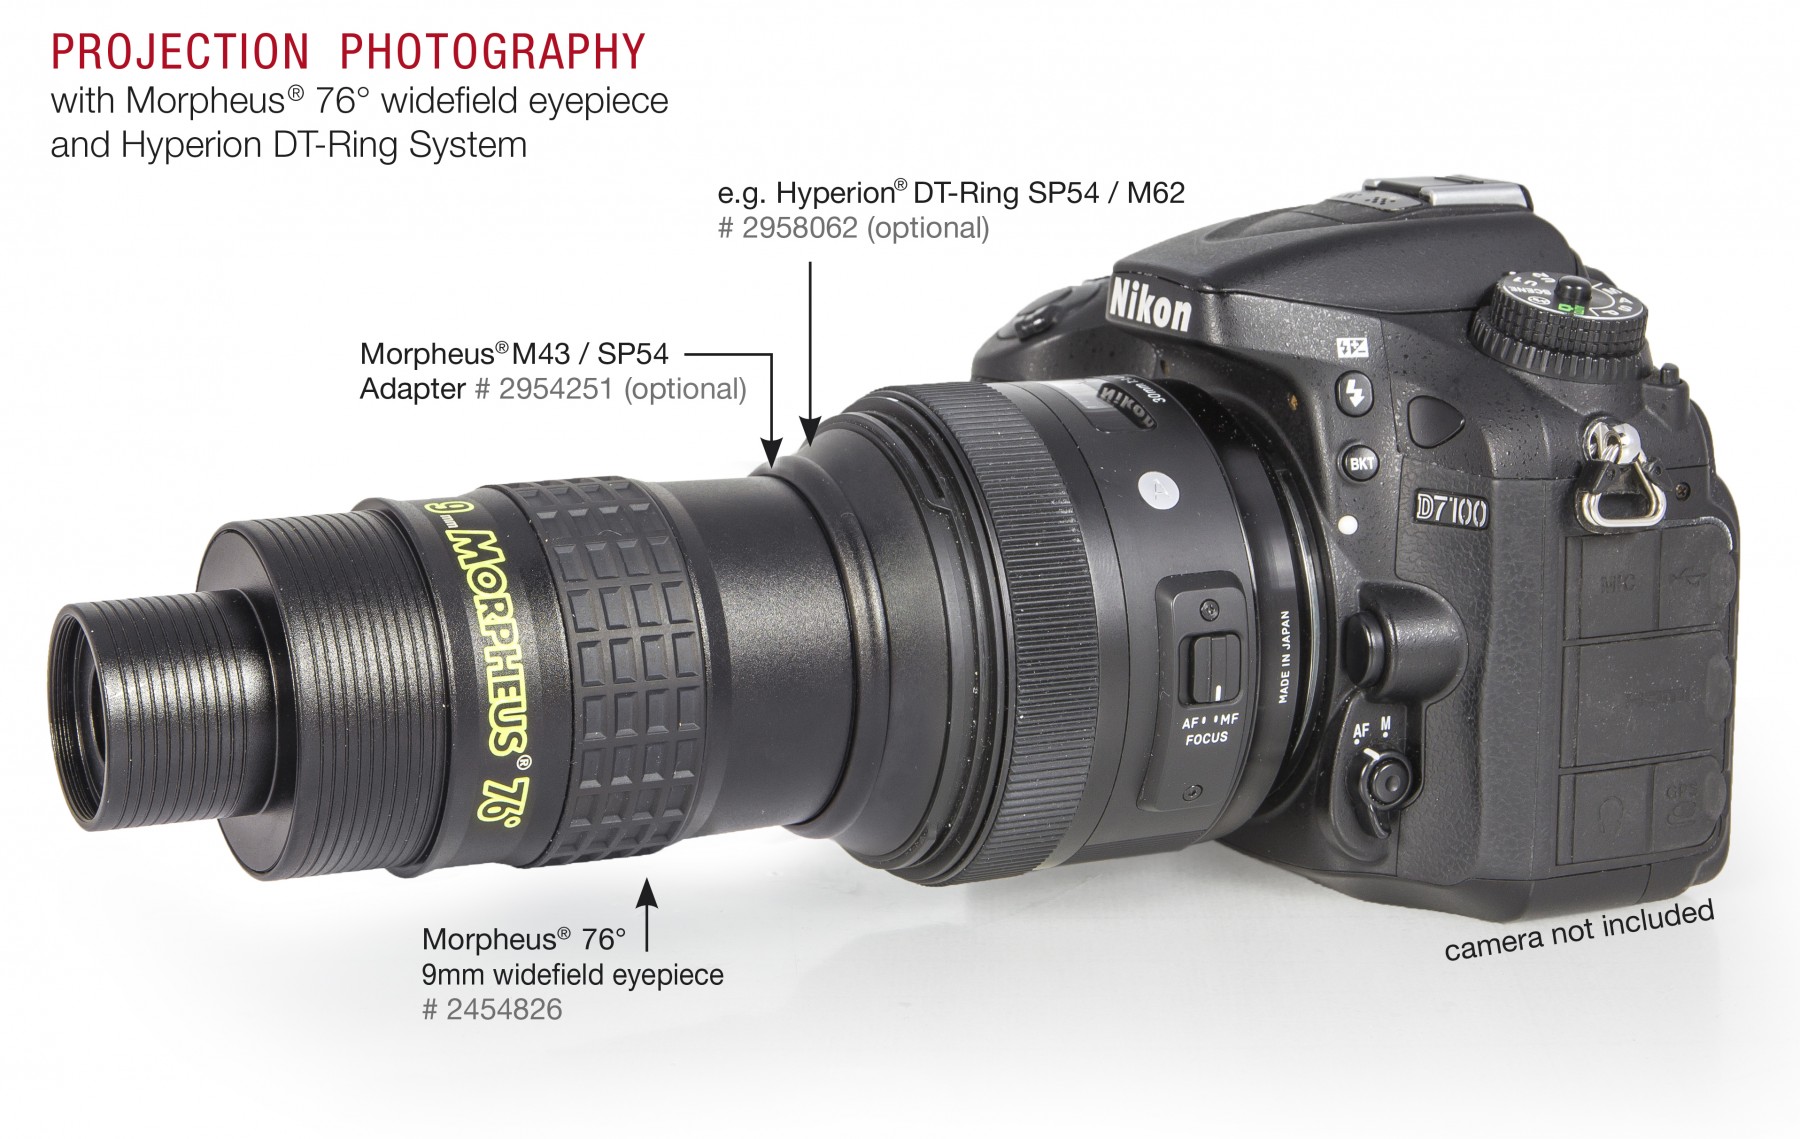 Anwendungsbild: Morpheus 9mm mit M43/SP54 Adapter und Hyperion DT-Ring (im Beispiel SP54/M62) montiert an Kameraobjektiv